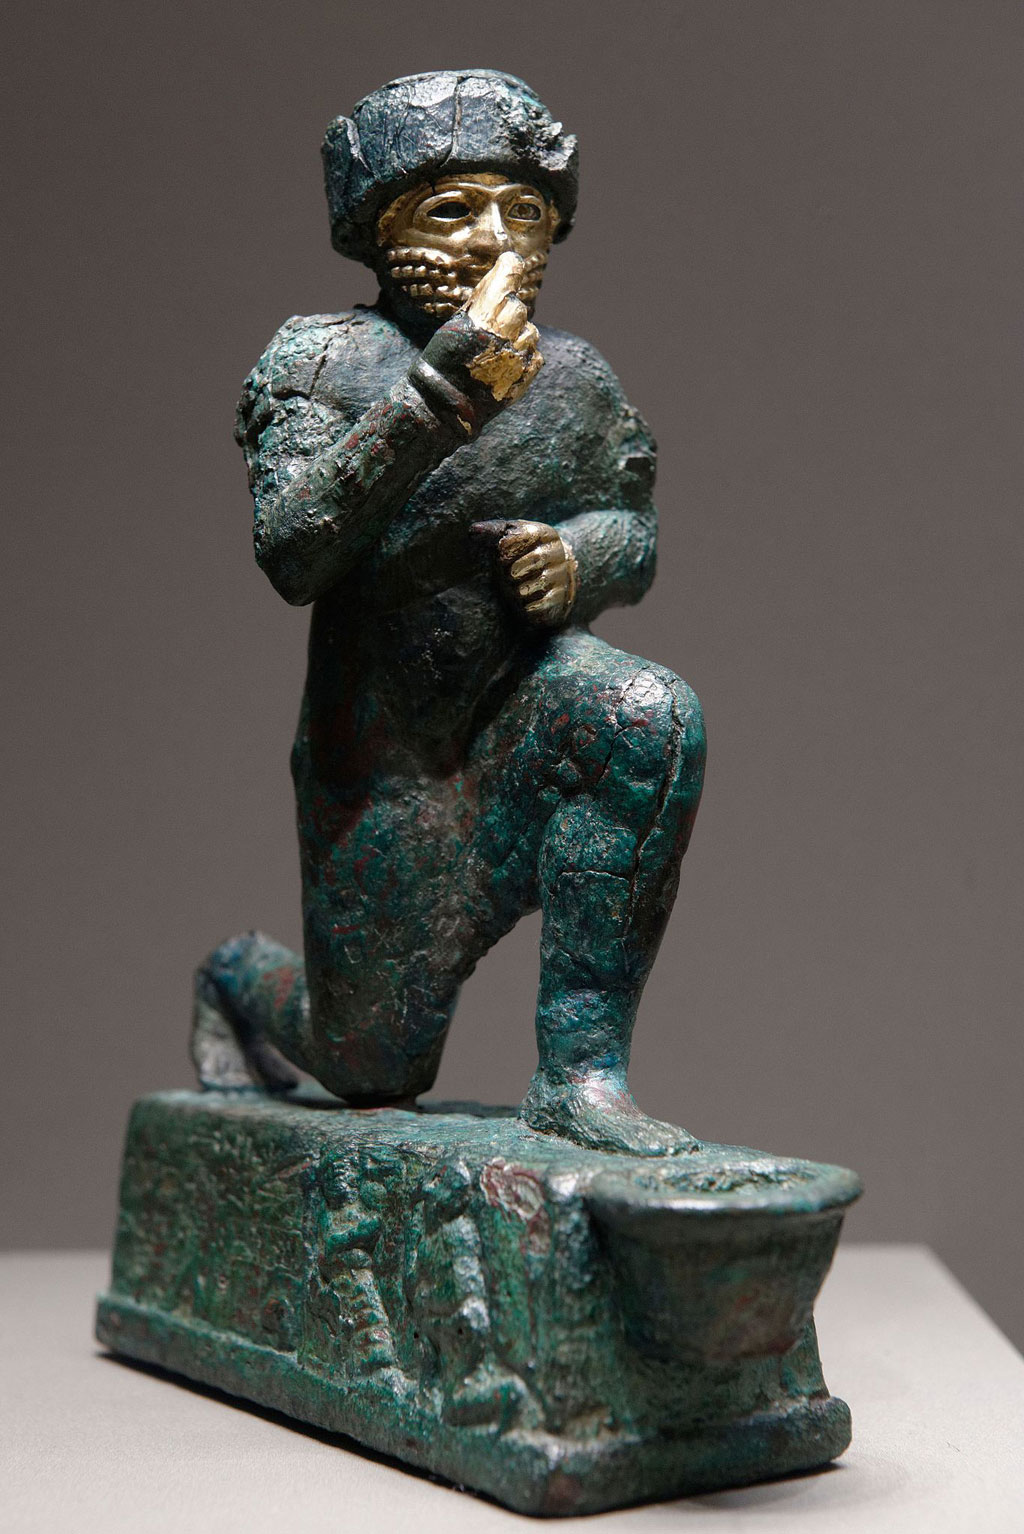 Man of Larsa in ancient Sumer making an offering to Amurru (Martu) for Hammurabi's life